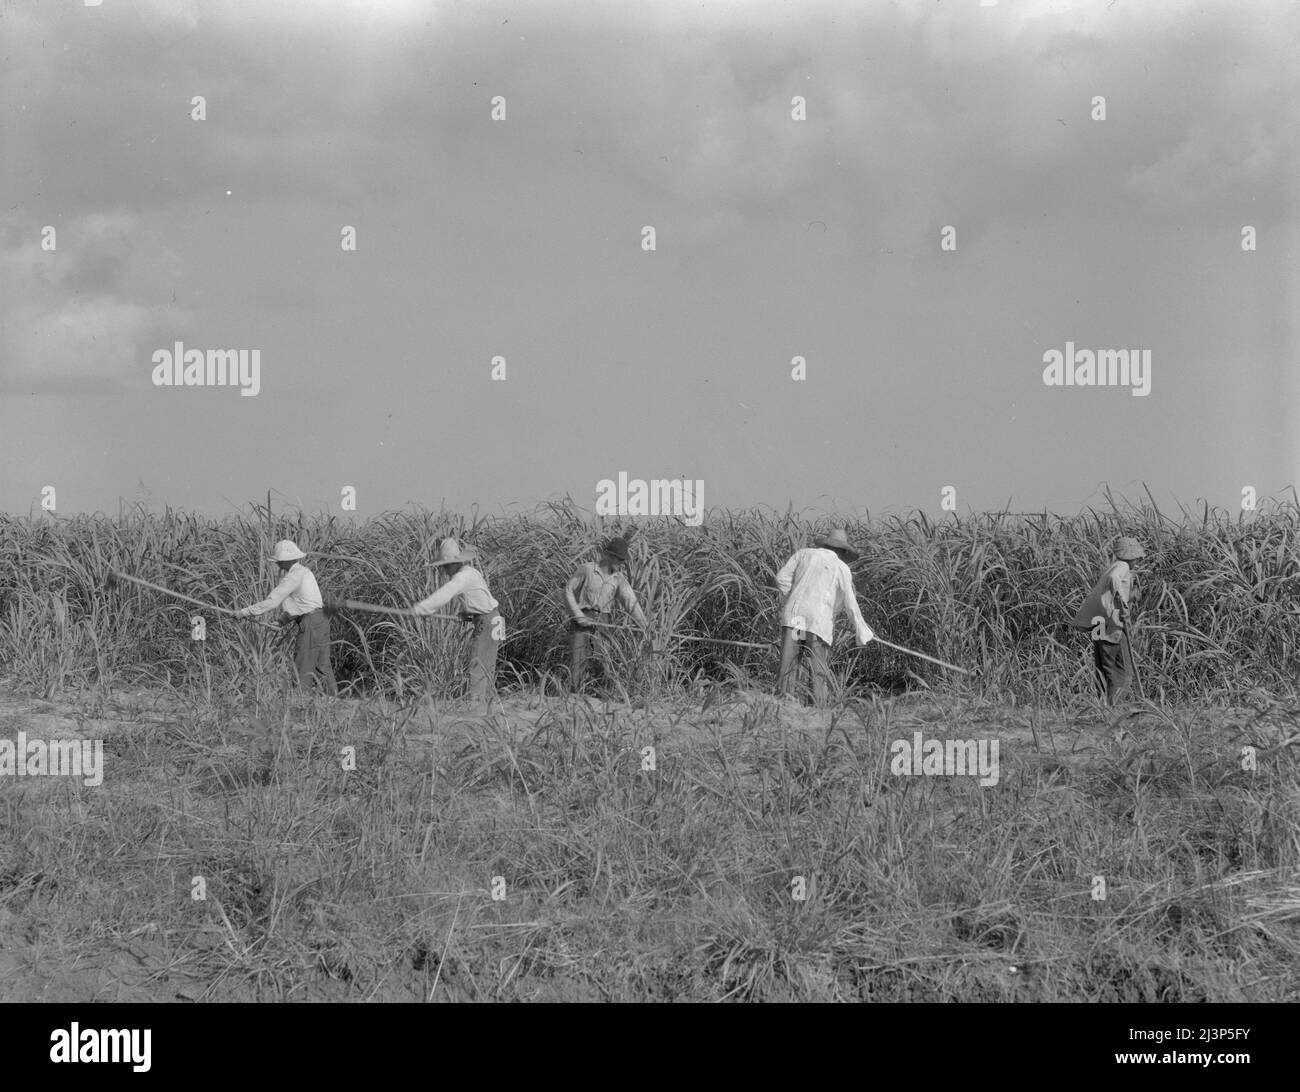 Hoeing sugarcane on plantation in Louisiana. Stock Photo